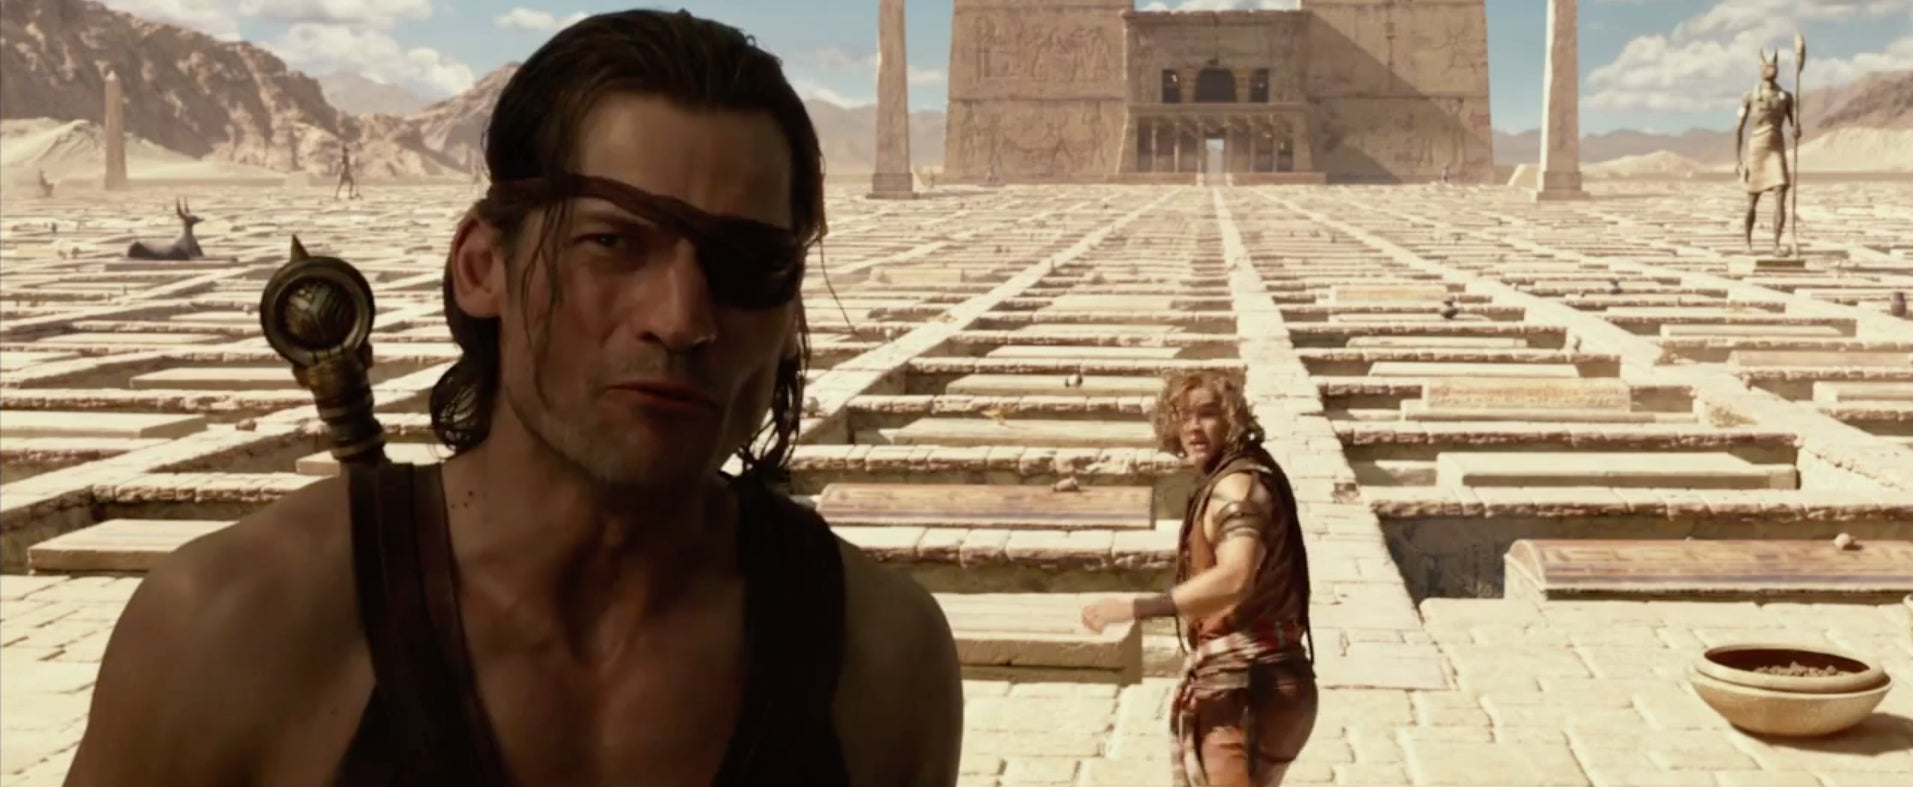 Shot from Gods of Egypt's trailer